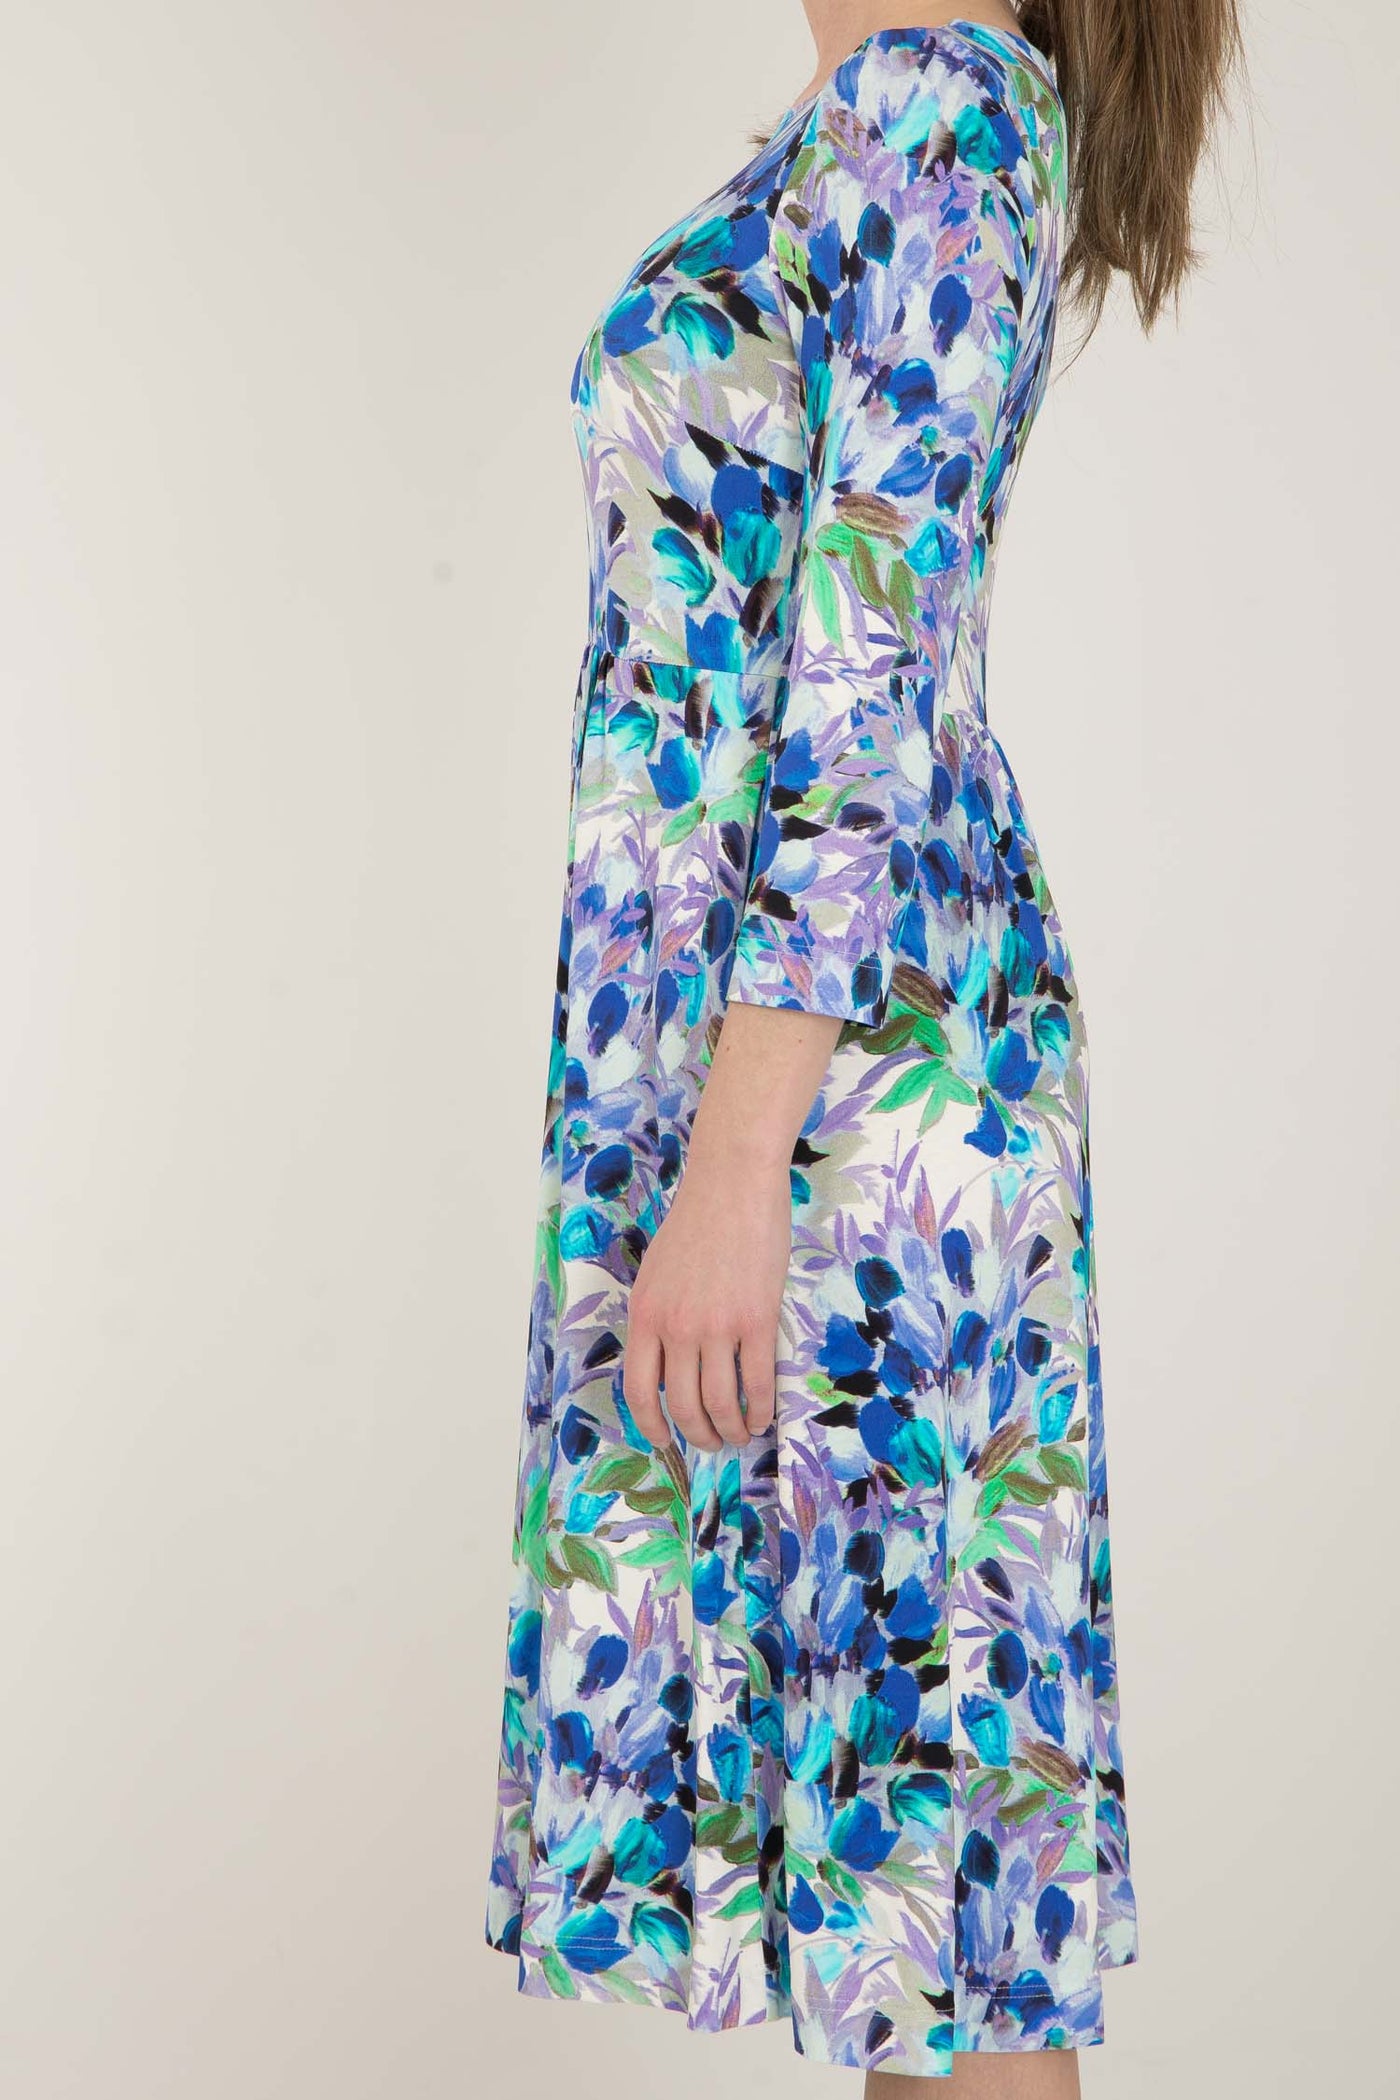 Ideal printed short jersey dress - Blue Bouquet - Knälång, mönstrad klänning i trikå